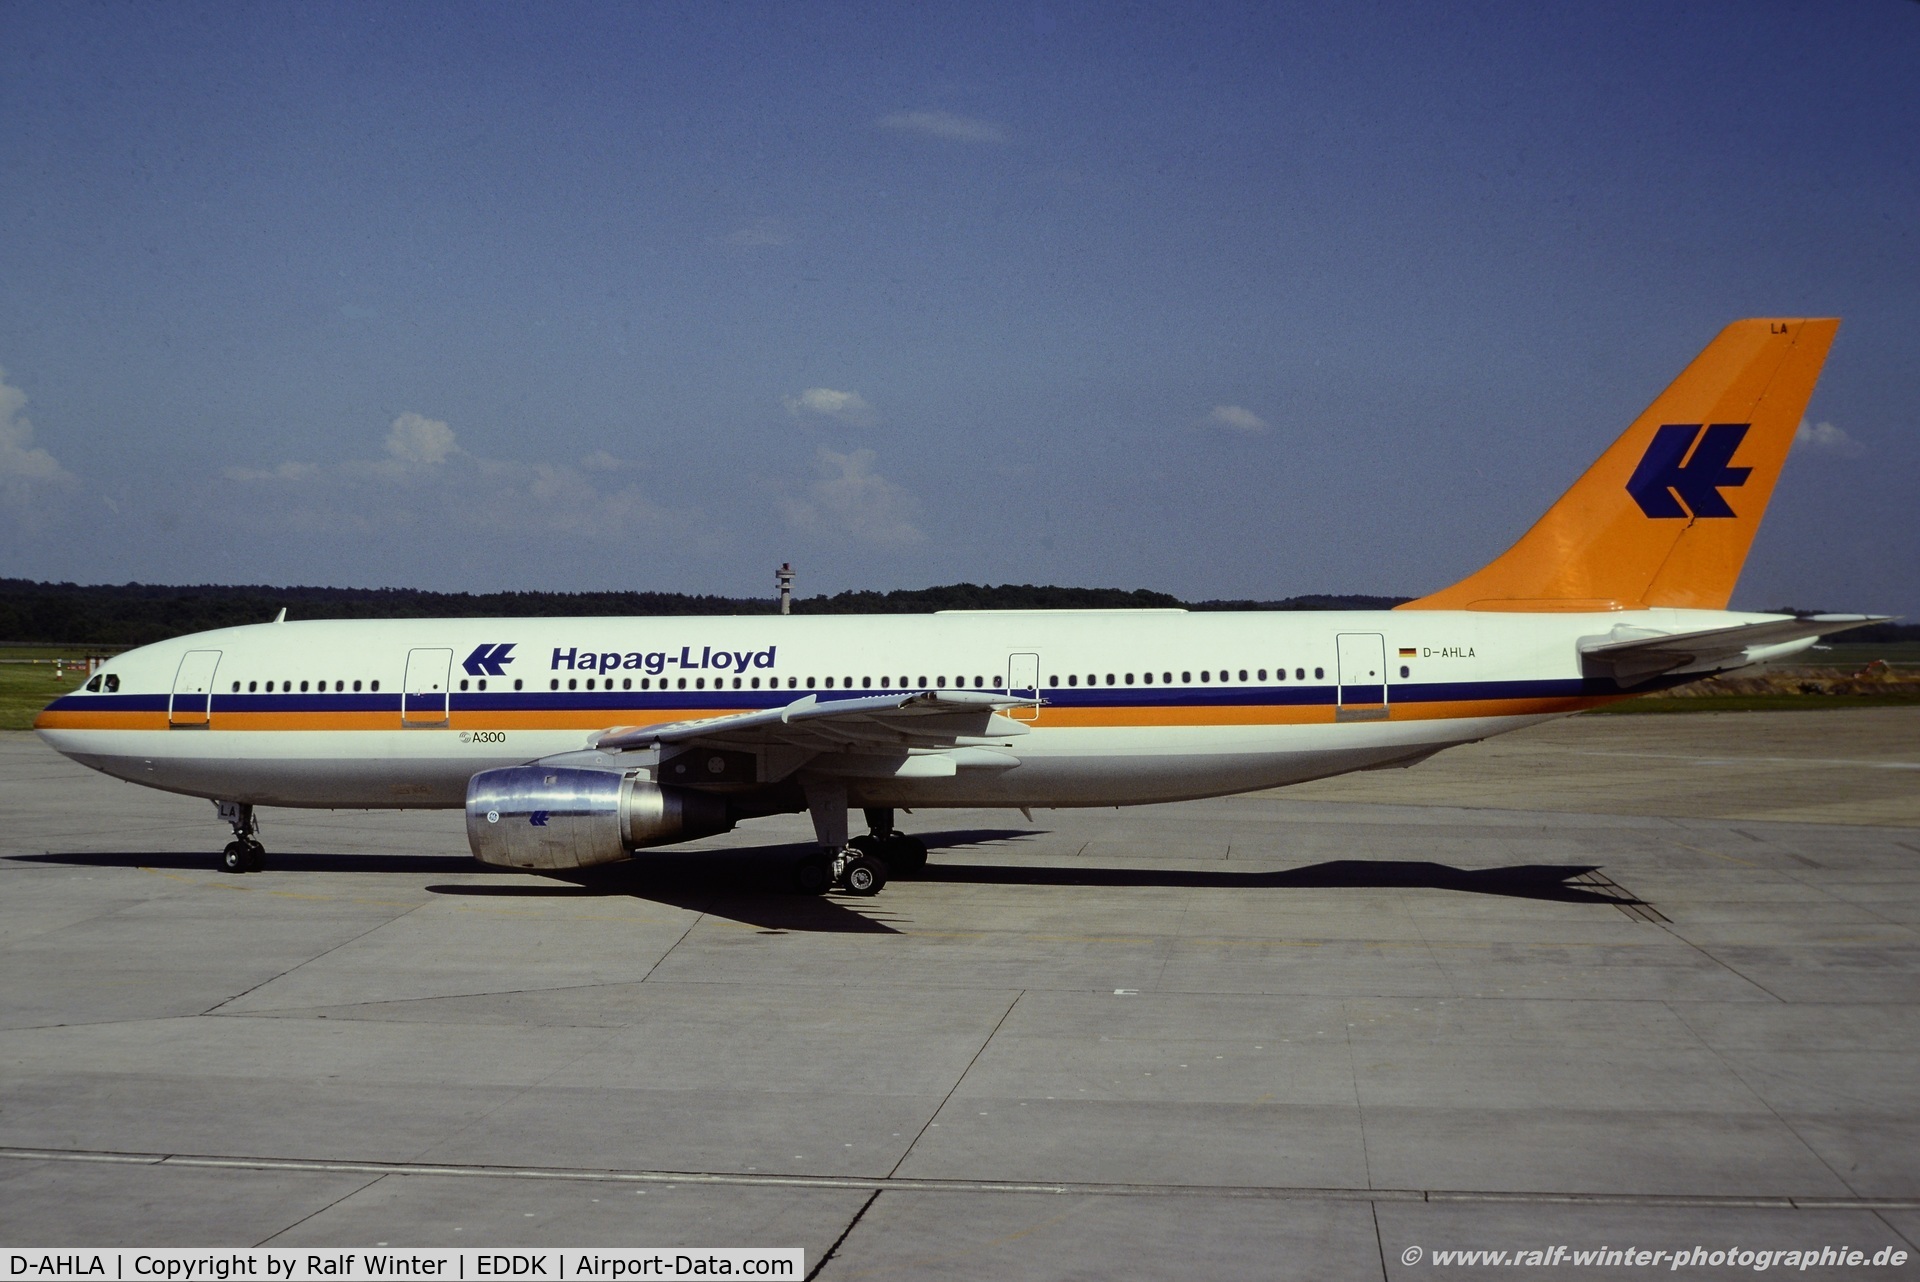 D-AHLA, 1989 Airbus A310-304 C/N 520, Airbus A300-B4-103 - Hapag Lloyd Flug - D-AHLA - 06.1979 - CGN